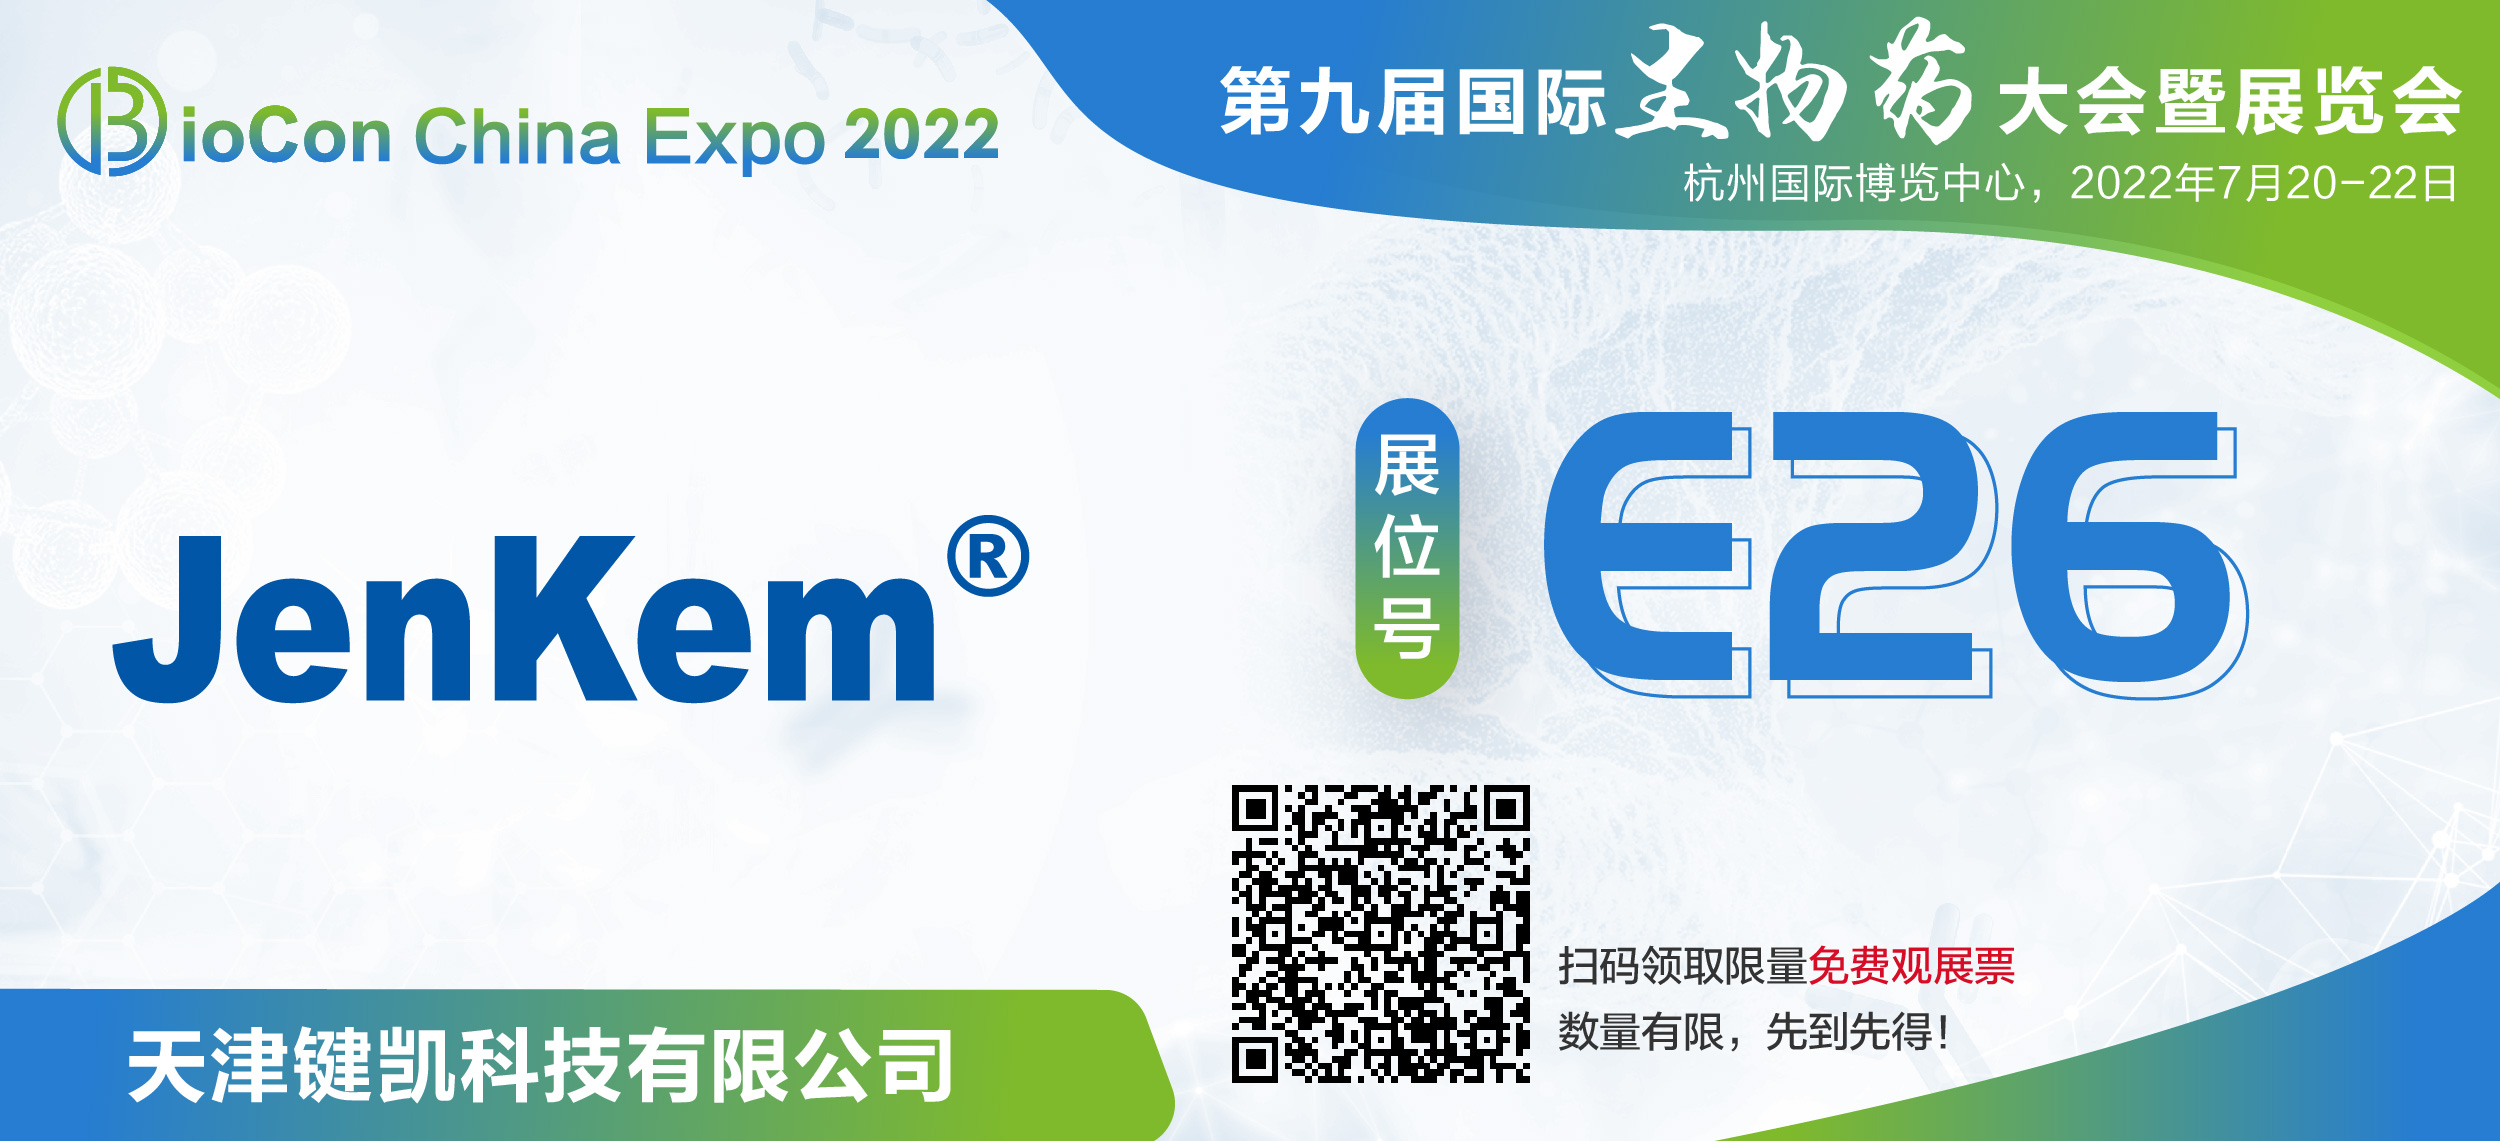 鍵凱科技邀您參加BioCon Expo 2022 第九屆國際生物藥大會